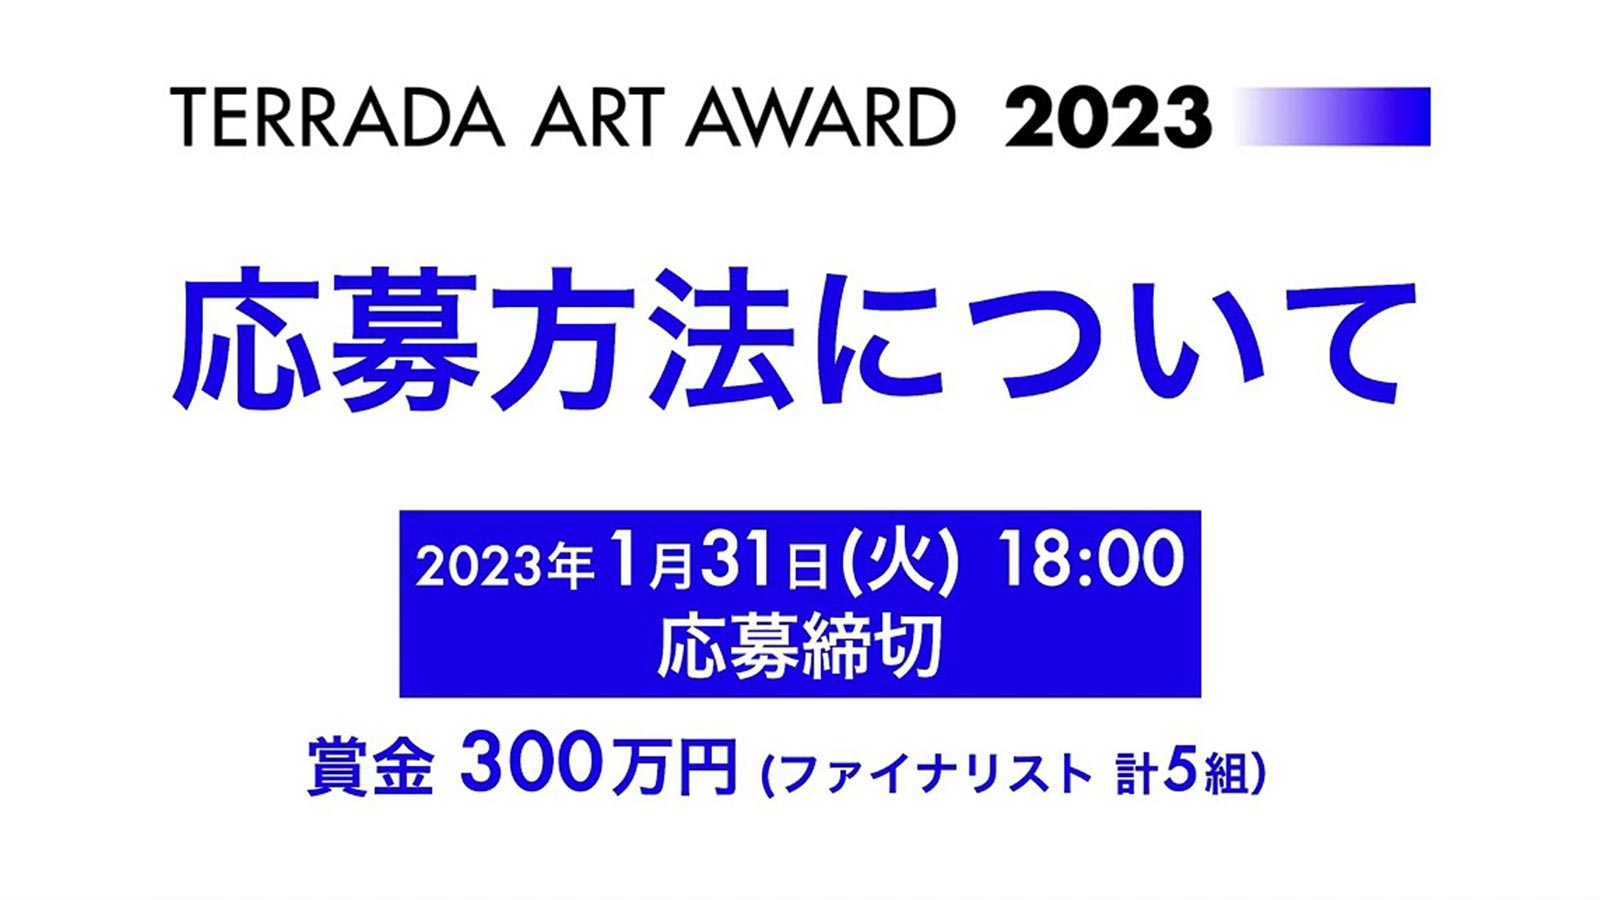 応募方法について TERRADA ART AWARD 2023